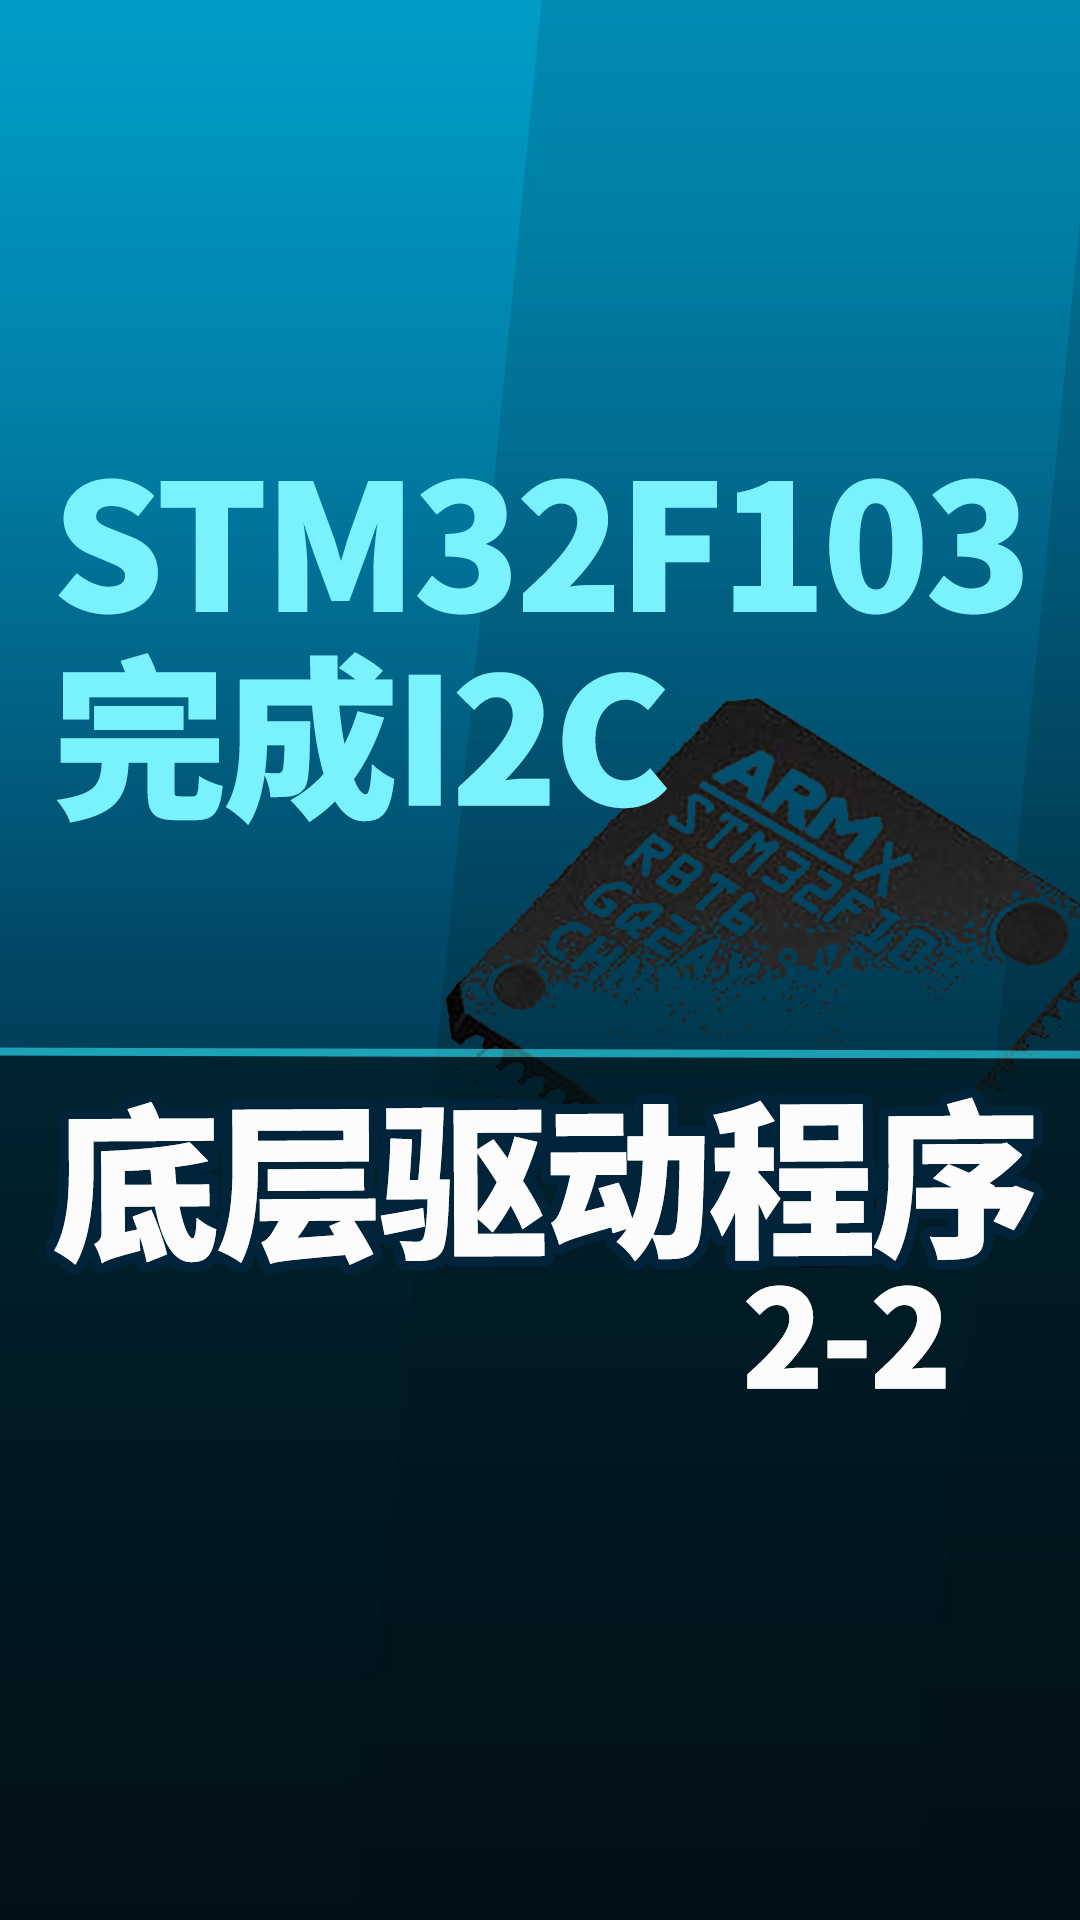 STM32F103-完成I2C底层驱动程序2-2#嵌入式开发 